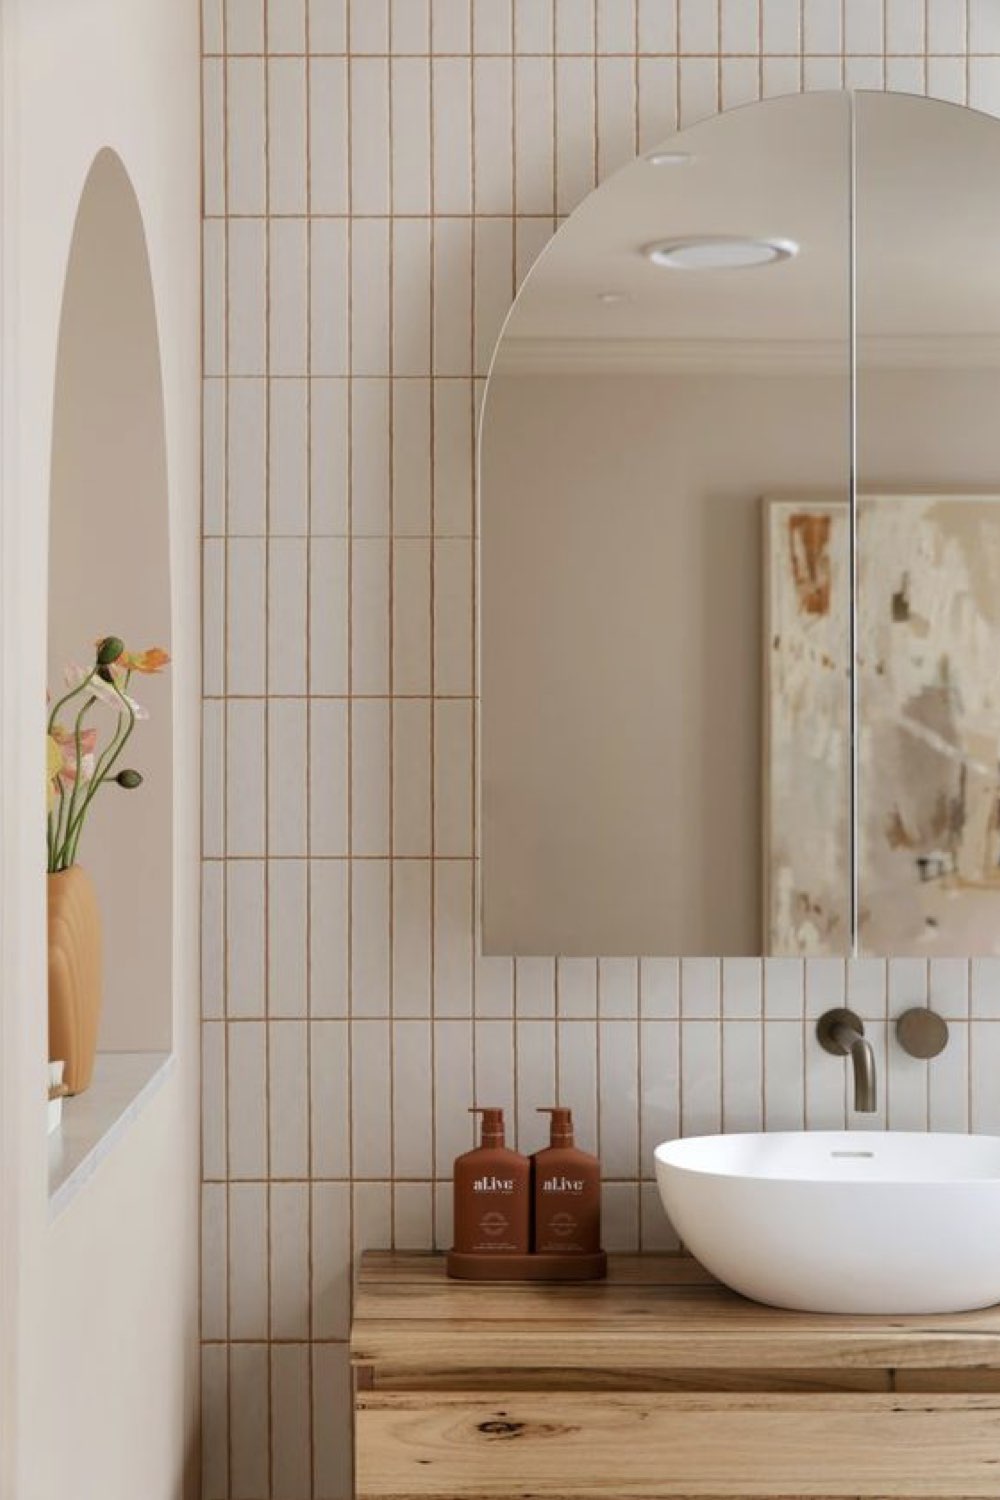 reussir deco salle de bain tendance épuré céramique murale moderne petit format miroir cintré arrondi sur le haut joint coloré